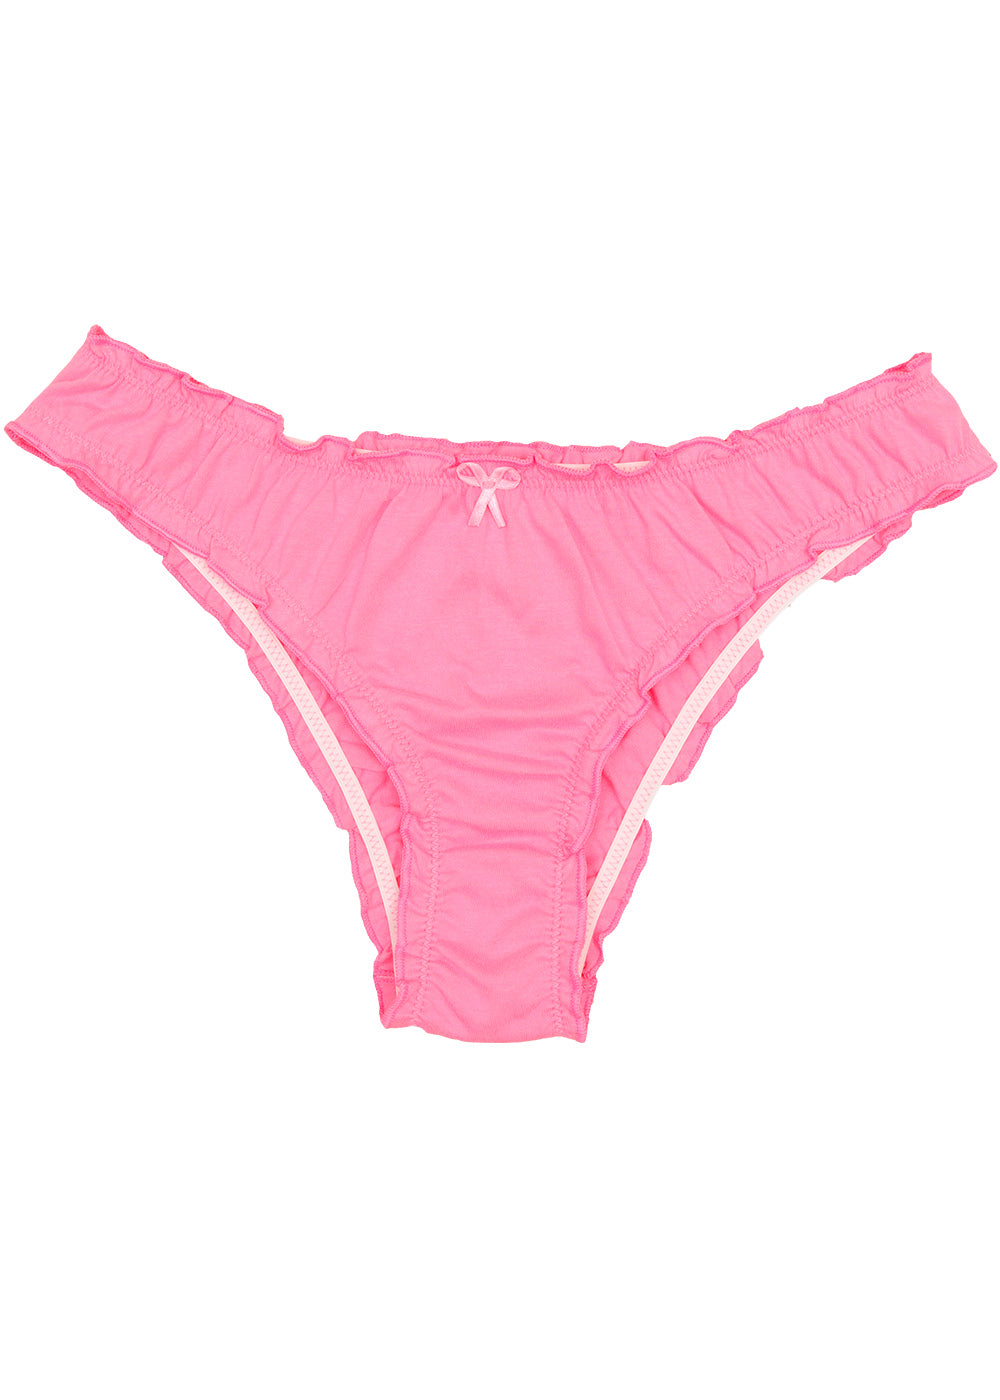 lingerie calcinha 100% algodão na cor rosa barbie. Confortavel.